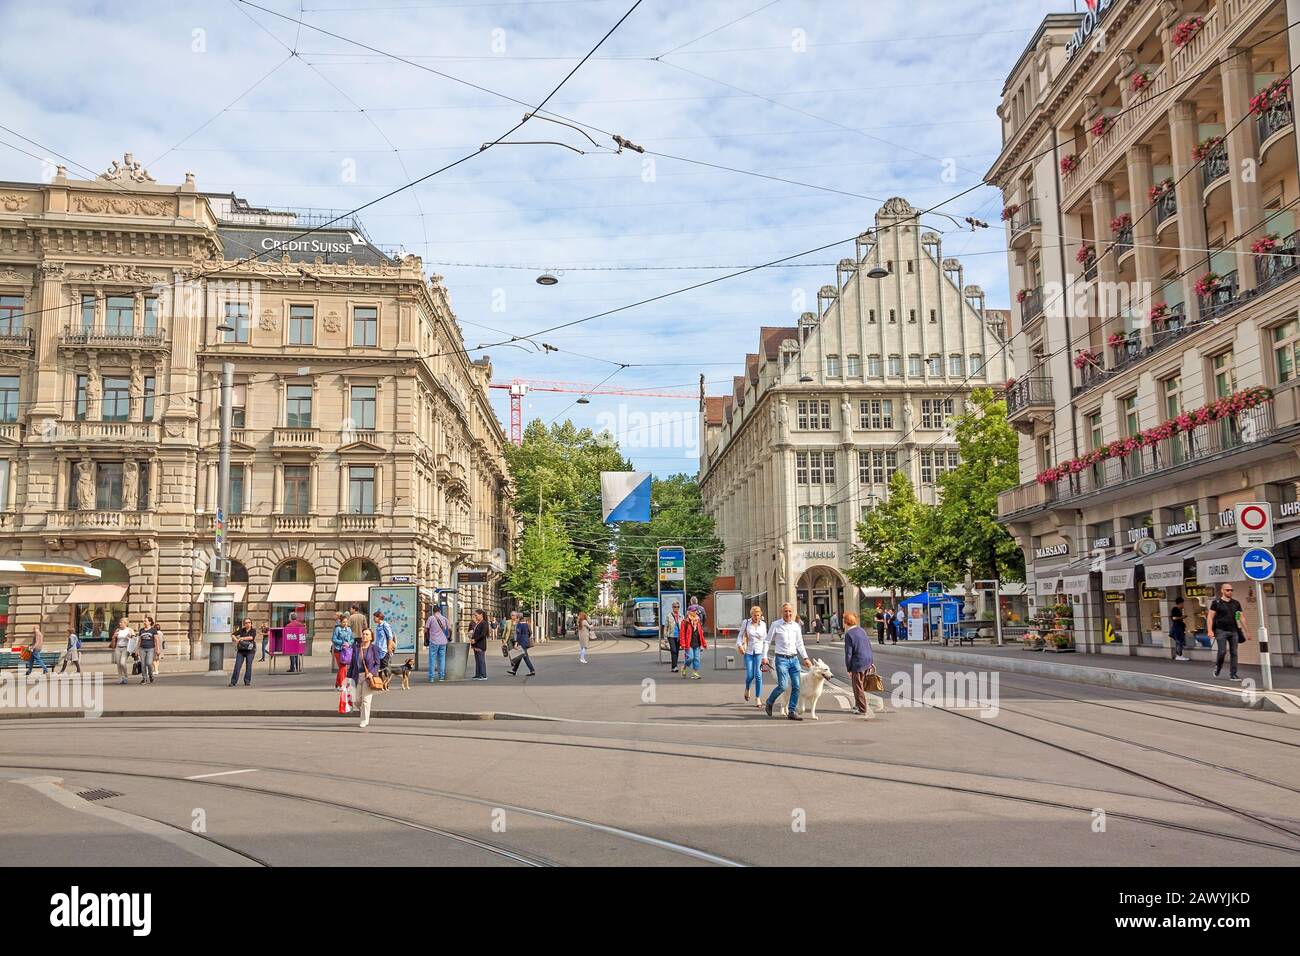 Zurigo, Svizzera - 10 giugno 2017: Piazza Paradeplatz , città interna di Zurigo, vista verso il lungomare dello shopping chiamato Bahnhofstrasse. Foto Stock